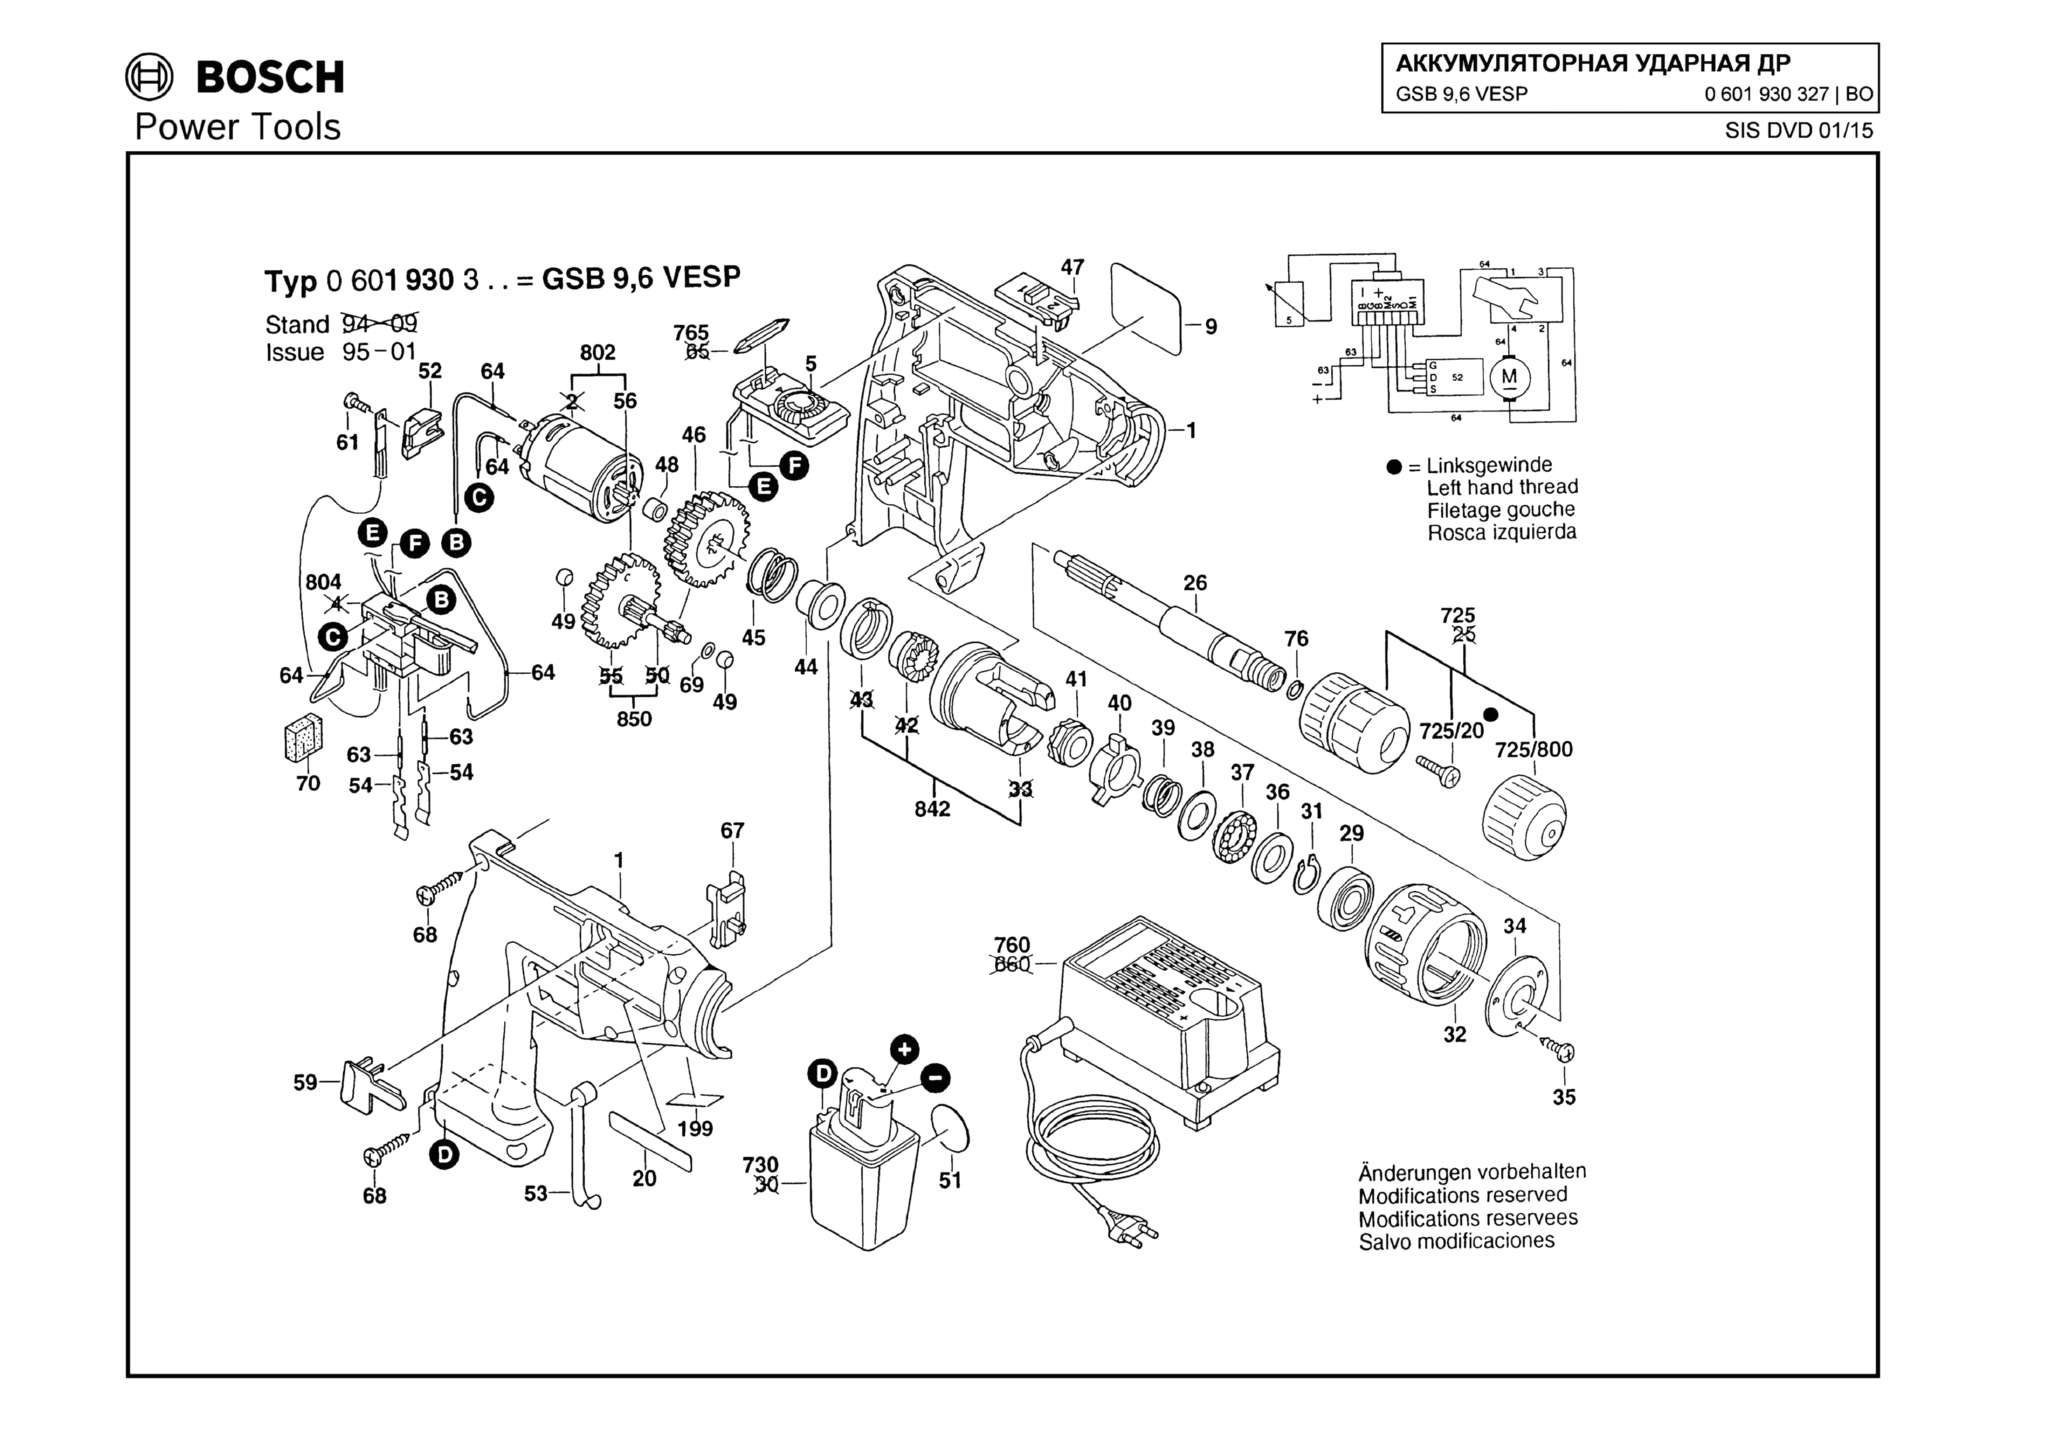 Запчасти, схема и деталировка Bosch GSB 9,6 VESP (ТИП 0601930327)